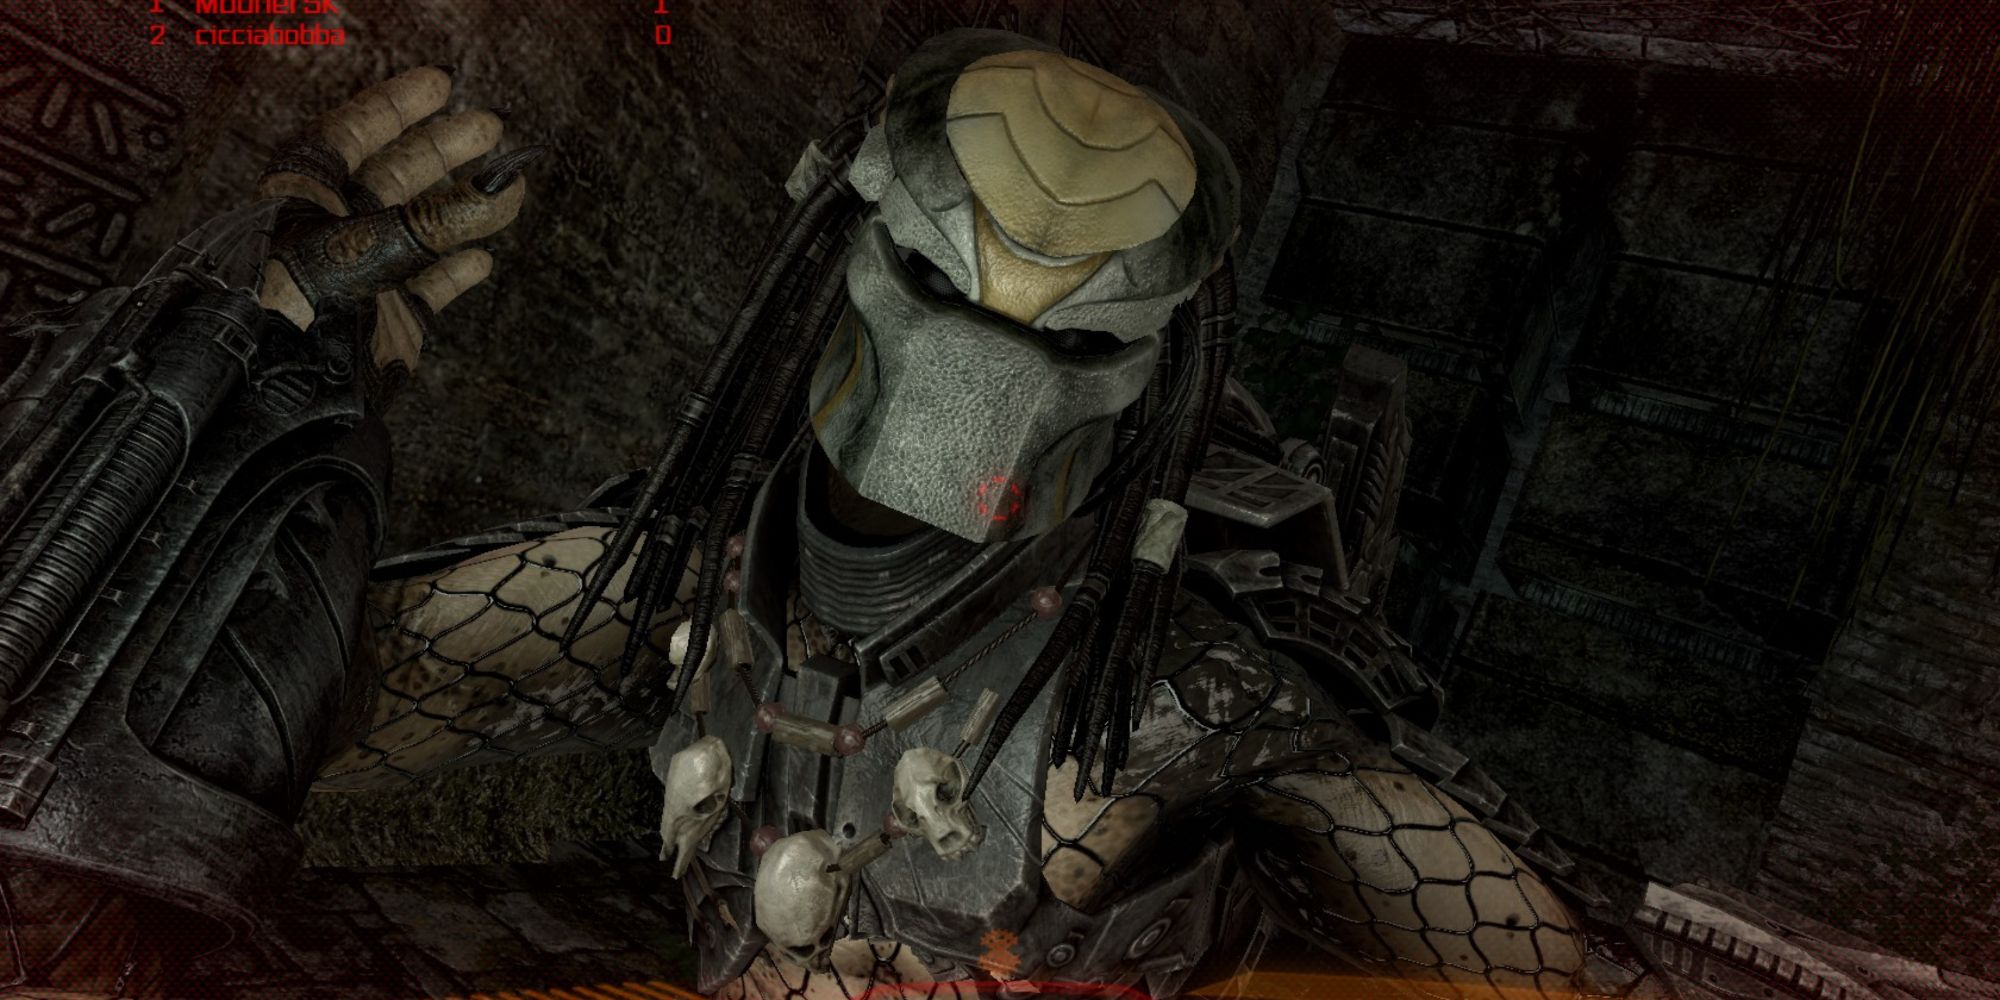 Dark Predator get a lot of killing done in 2010's AvP video game